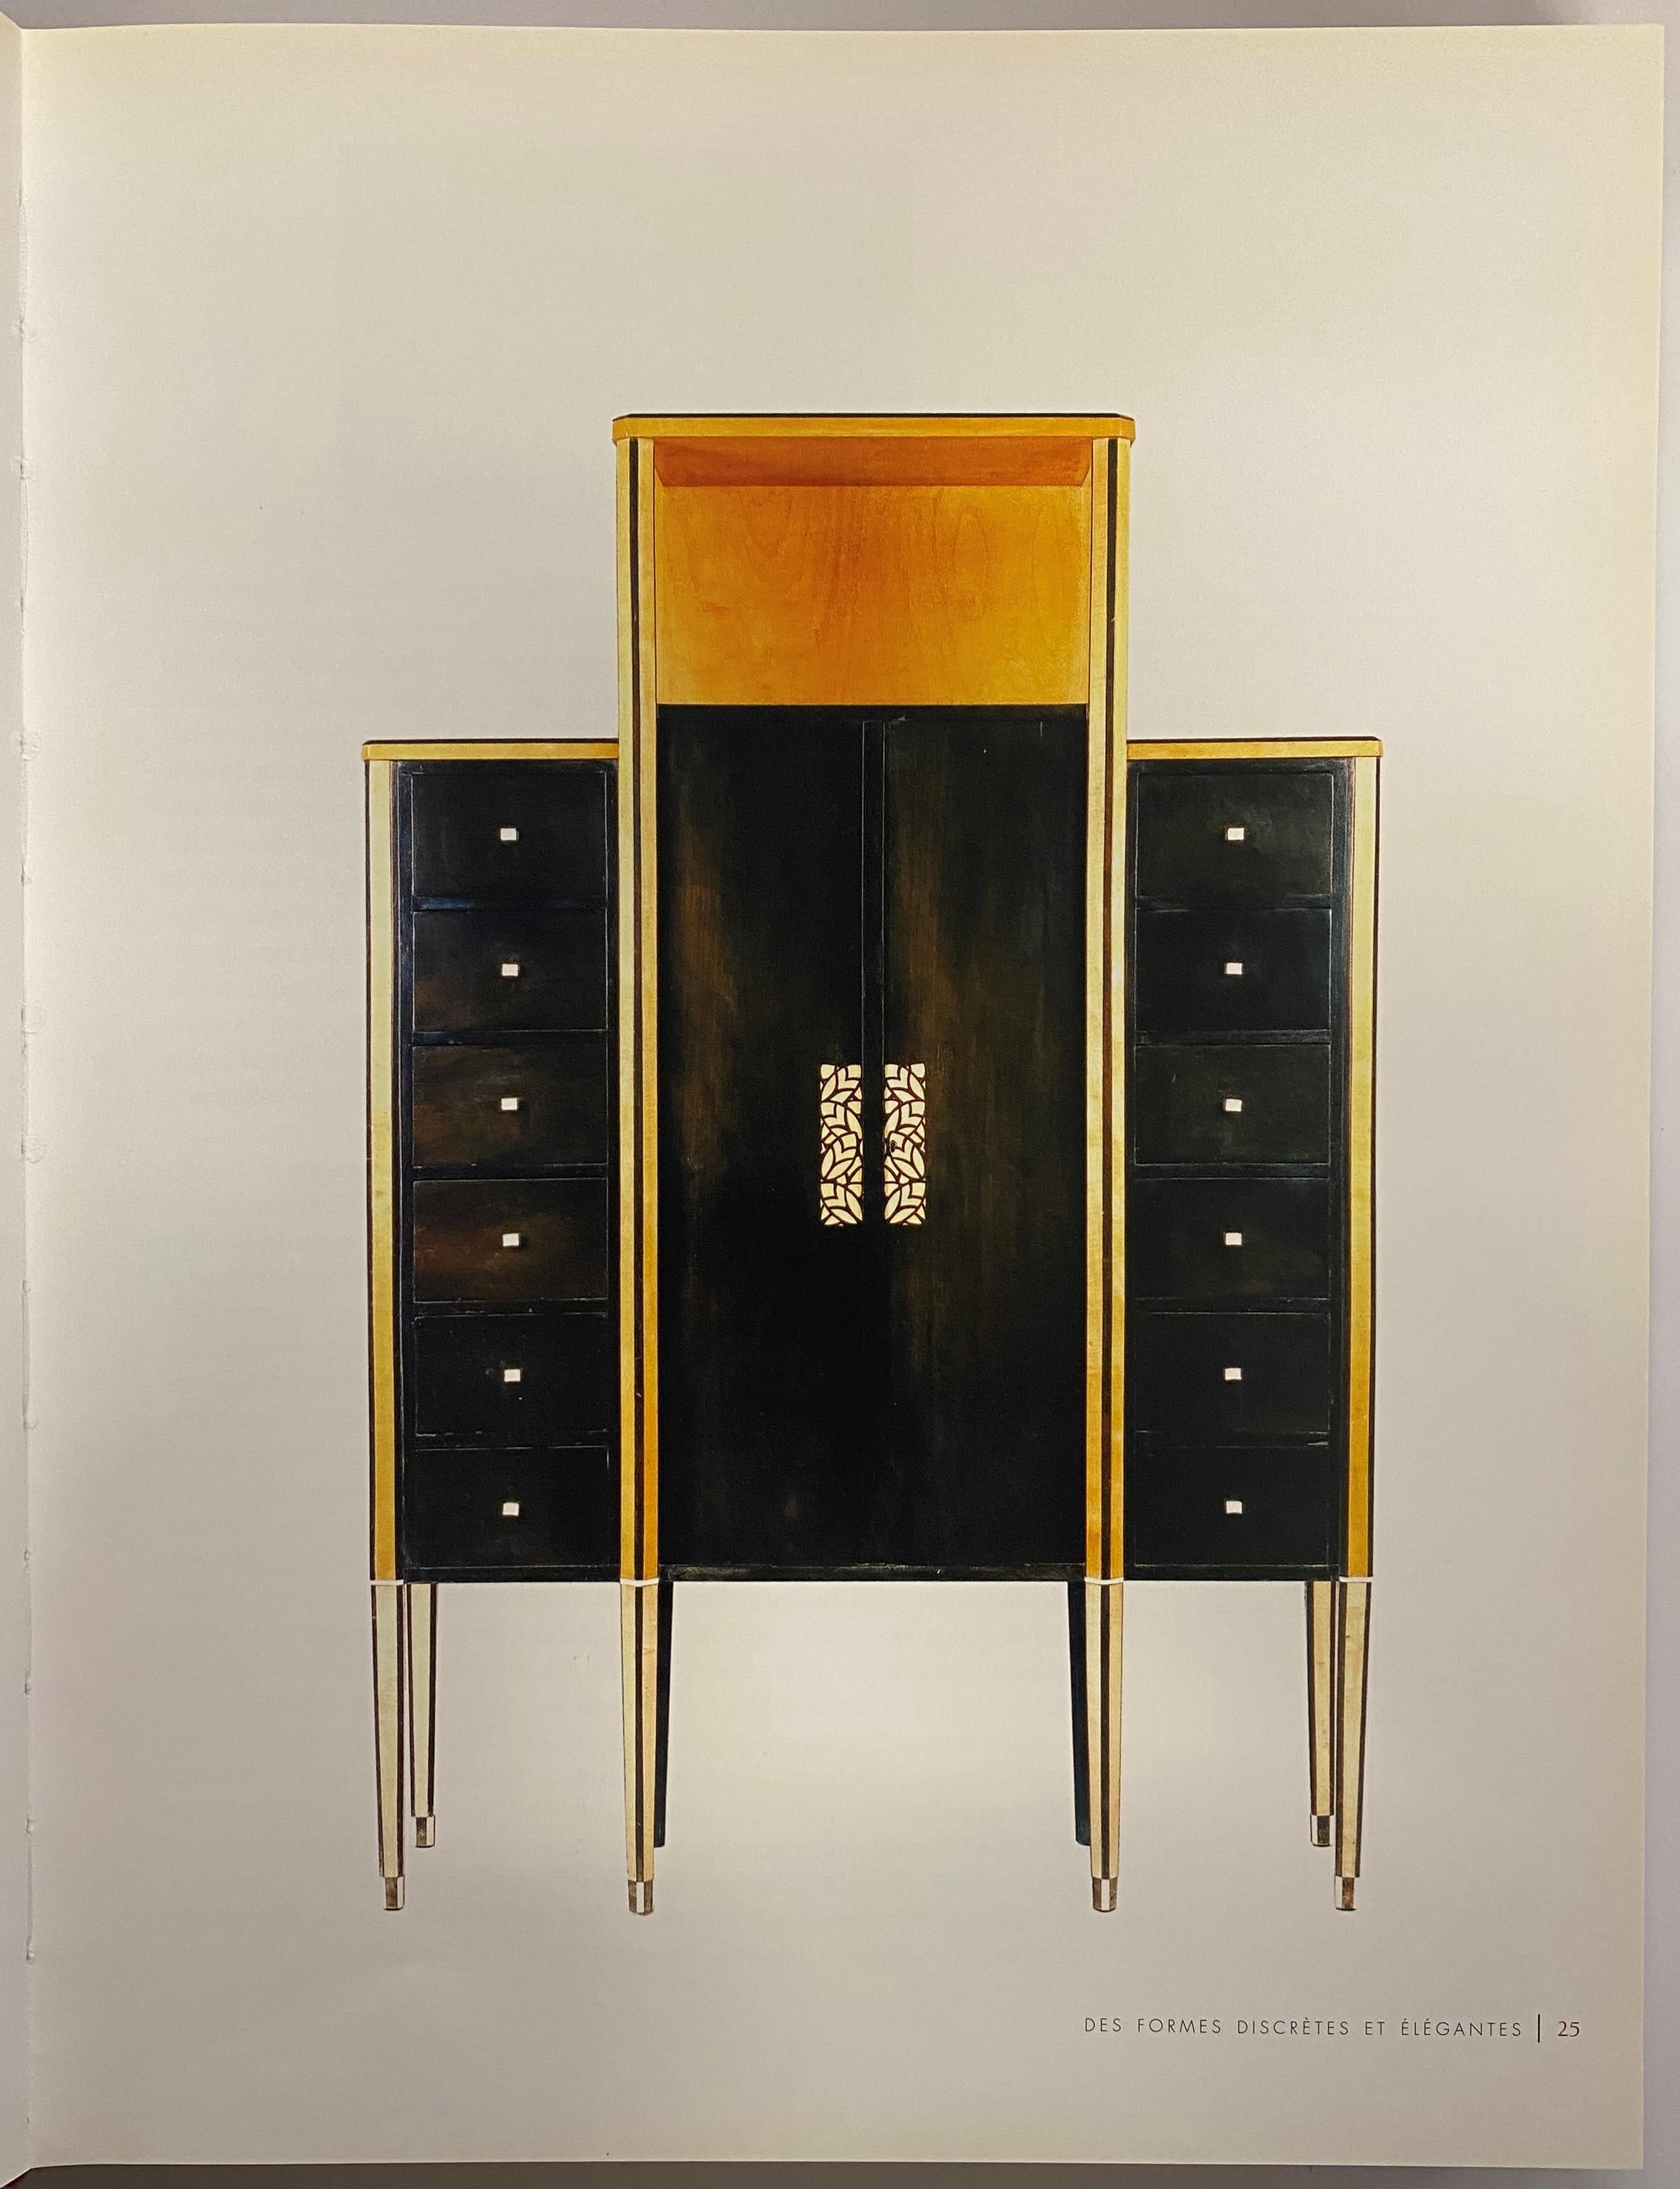 Diese Monografie über das Haus Dominique, das vor allem für seine schönen modernen Möbel bekannt wurde, handelt von den beiden Männern, die ab 1920 unter diesem Namen zusammenarbeiteten - Andre Domin (1883-1962) und Marcel Geneviève (1885-1967). Sie